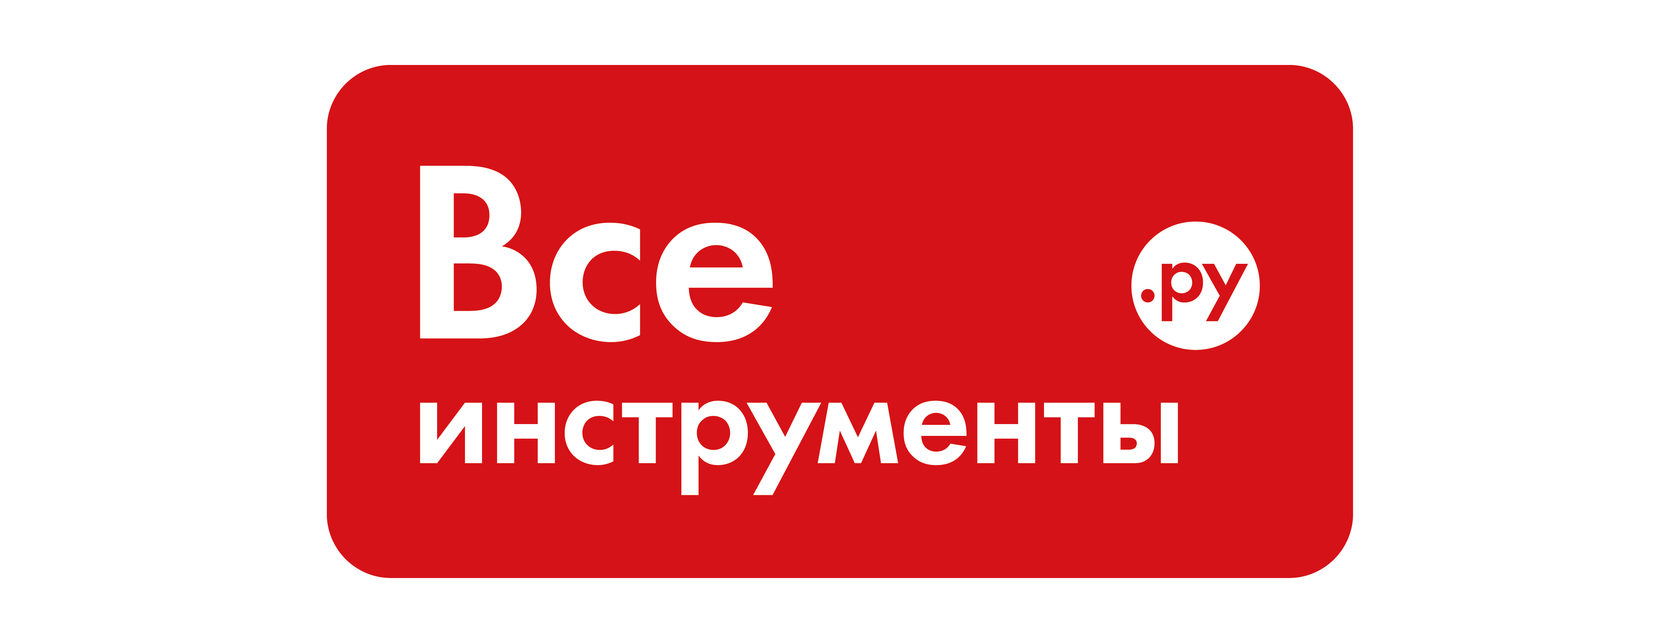 Всеинструменты Ру Интернет Магазин Саранск